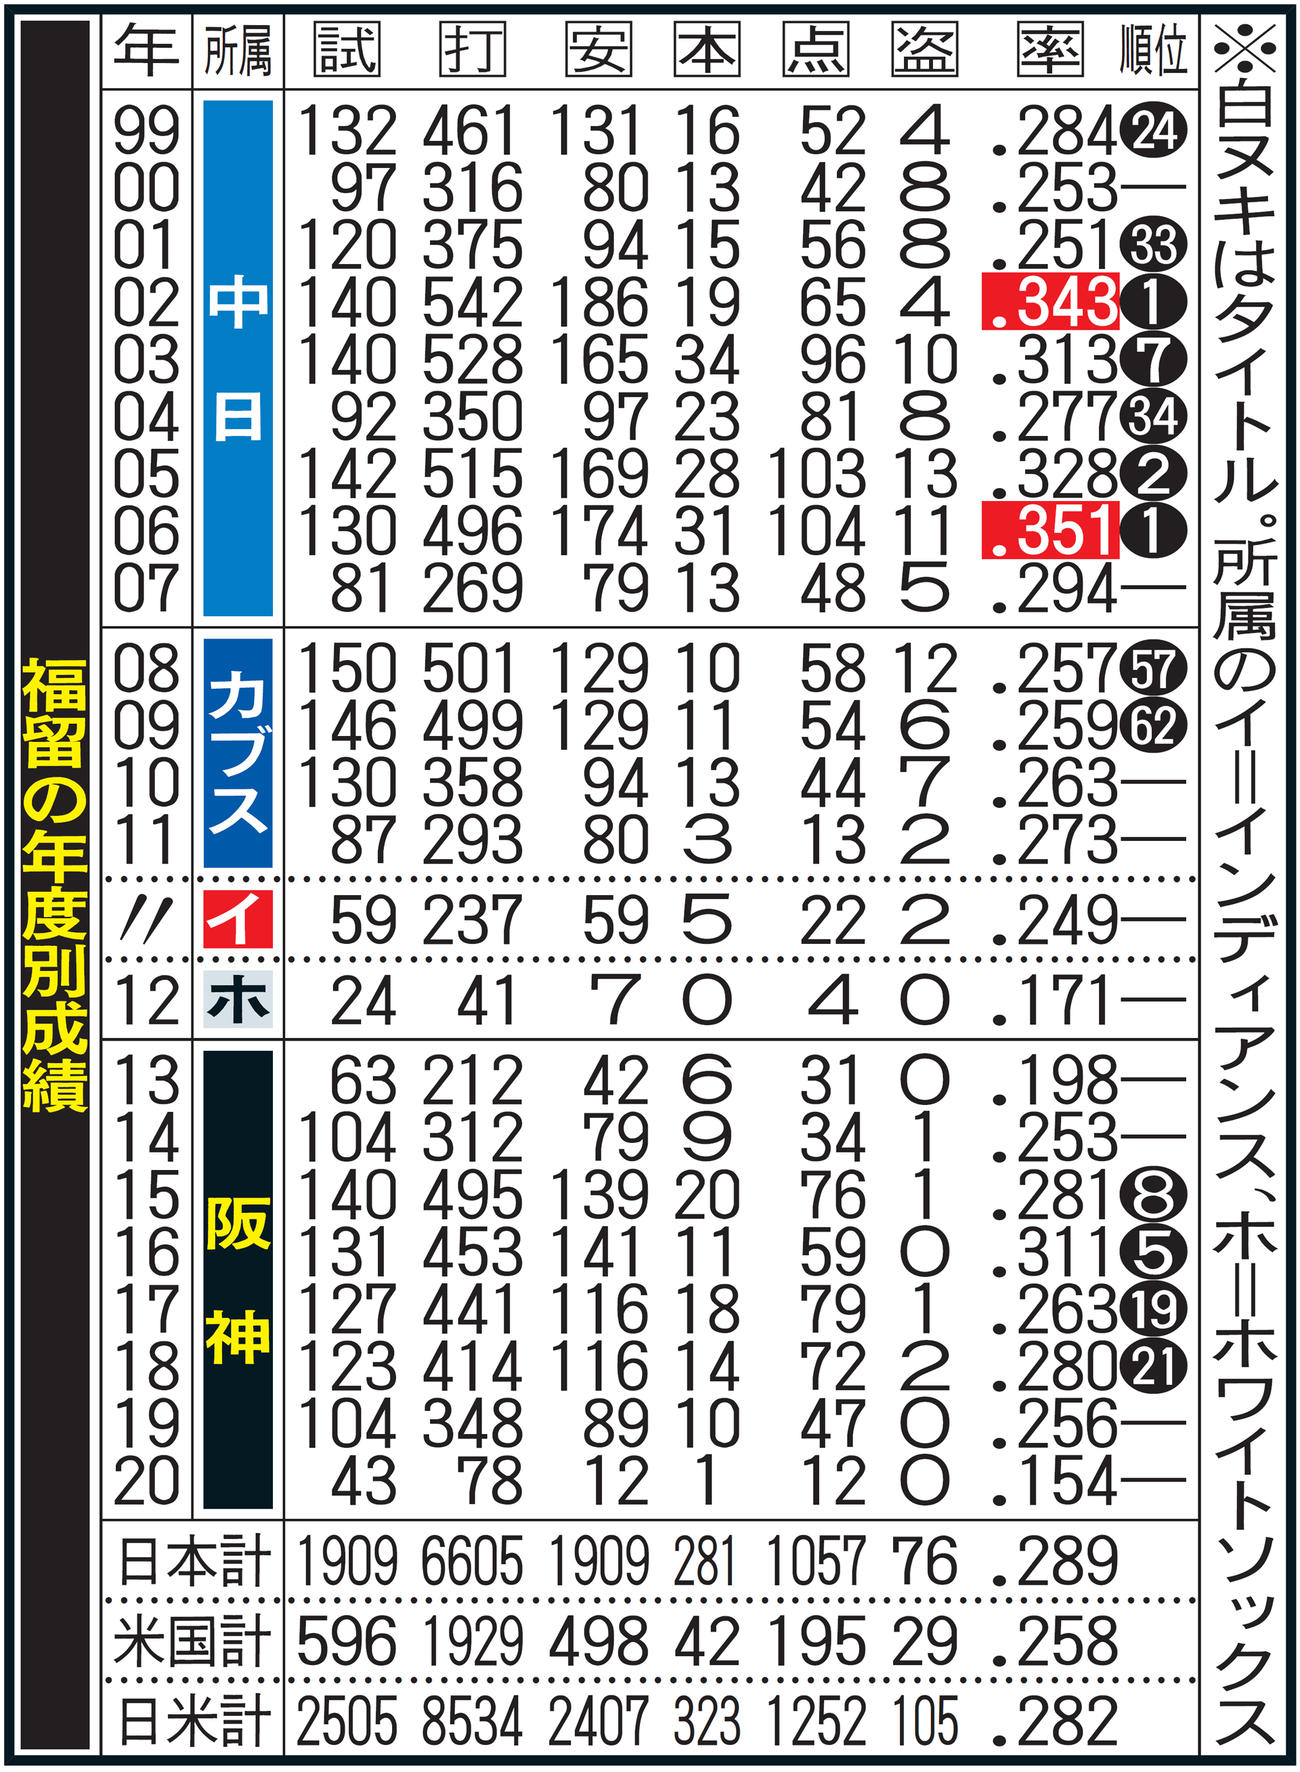 ガンバ大阪の年度別成績一覧